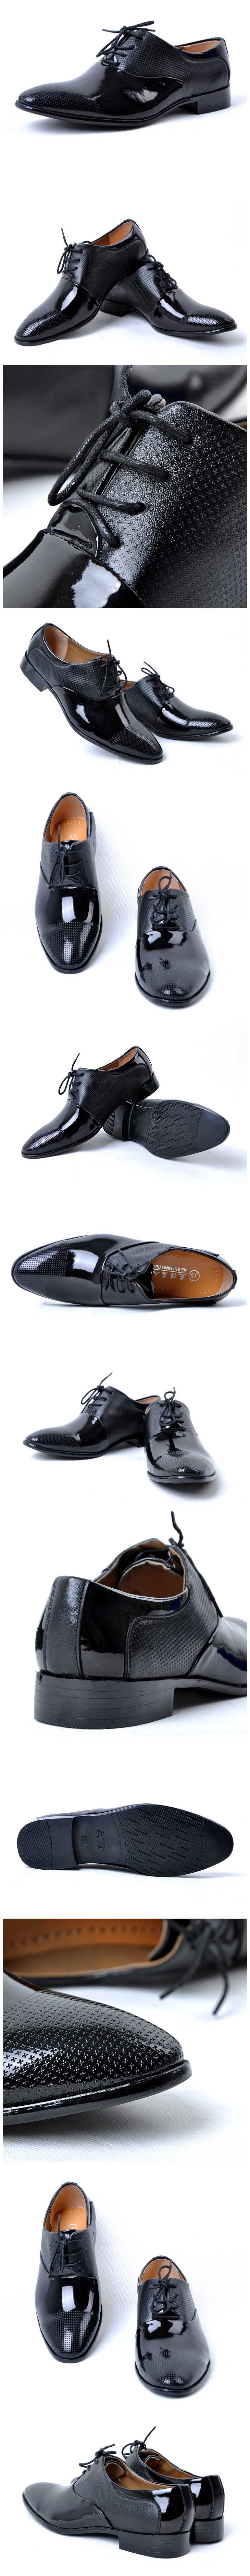 cari sepatu kerja pria? klik dan pesan online sekarang , pfp menyediakan ratusan model sepatu kerja pria branded.